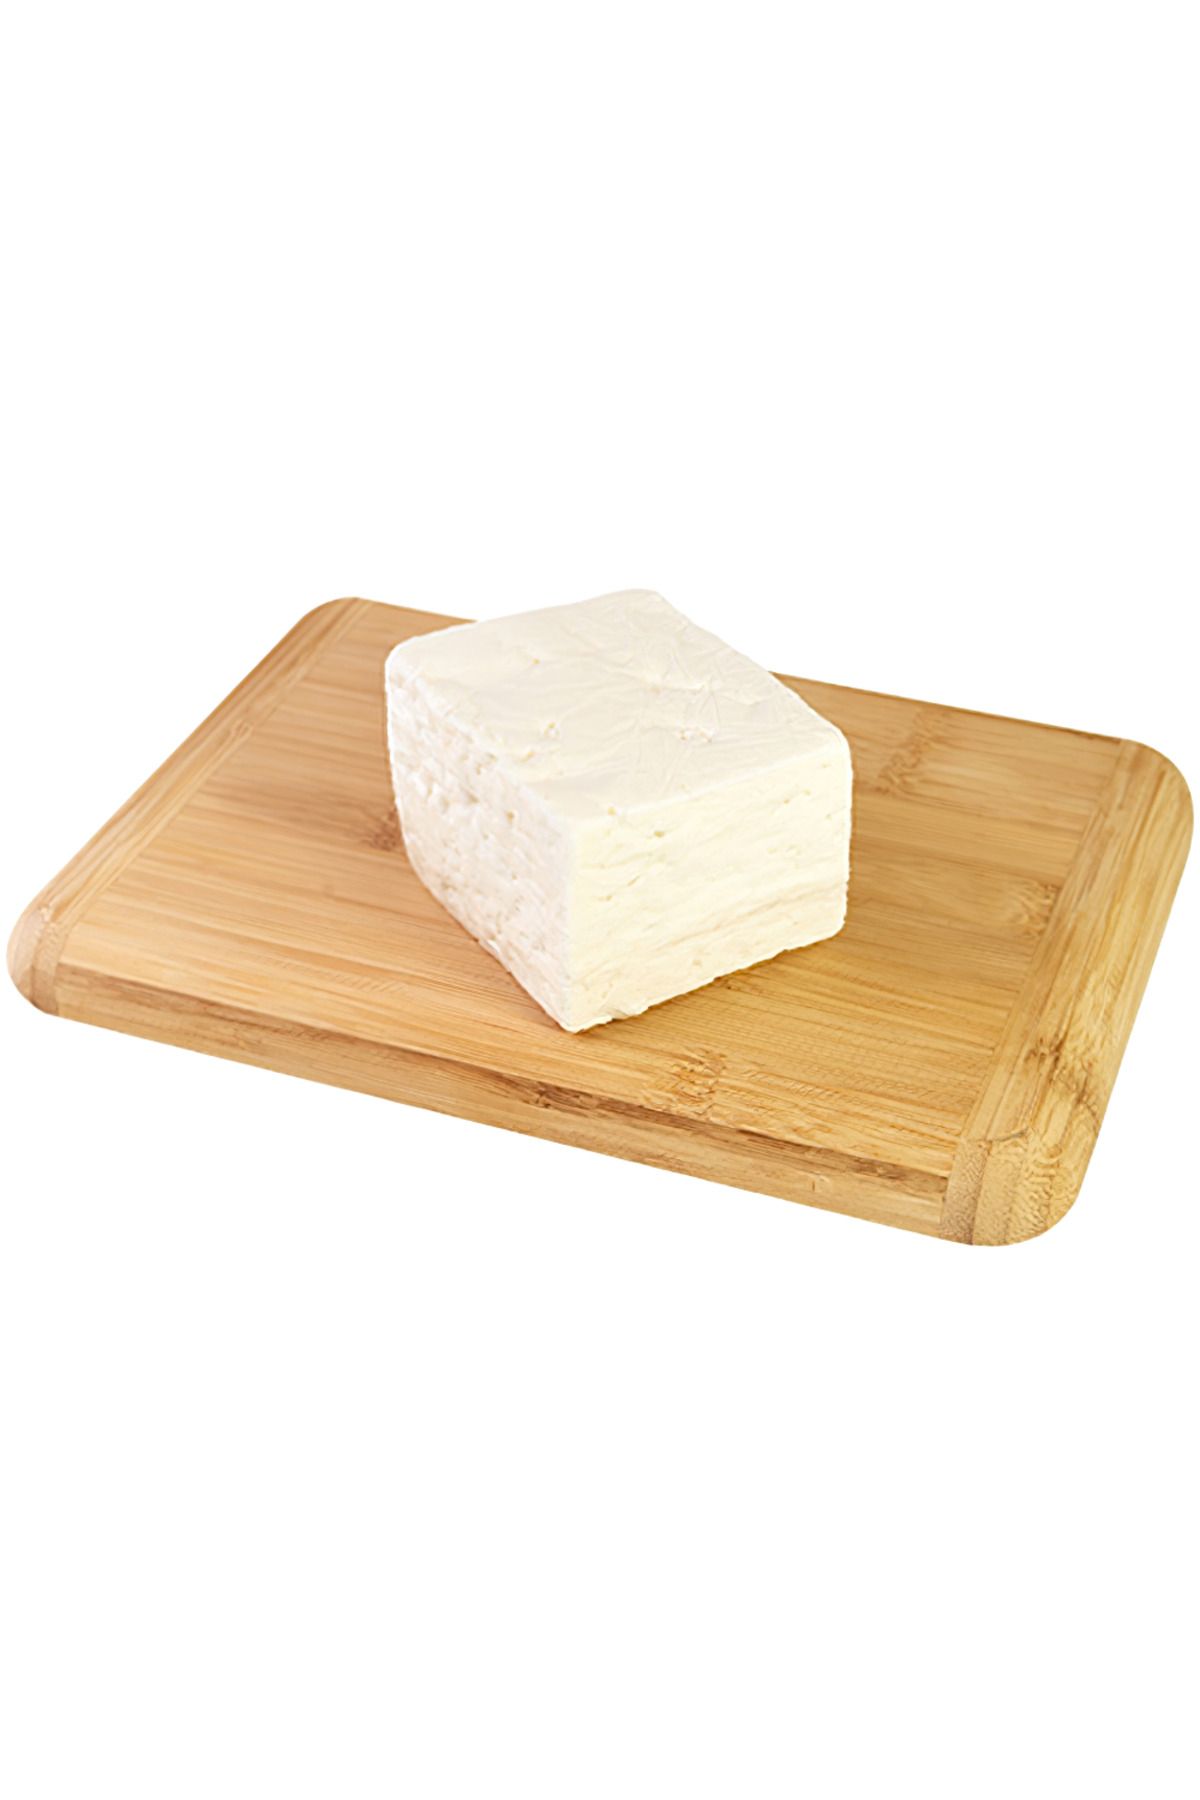 Tahsildaroğlu Orta Sert Ezine Peynir (3 KG)